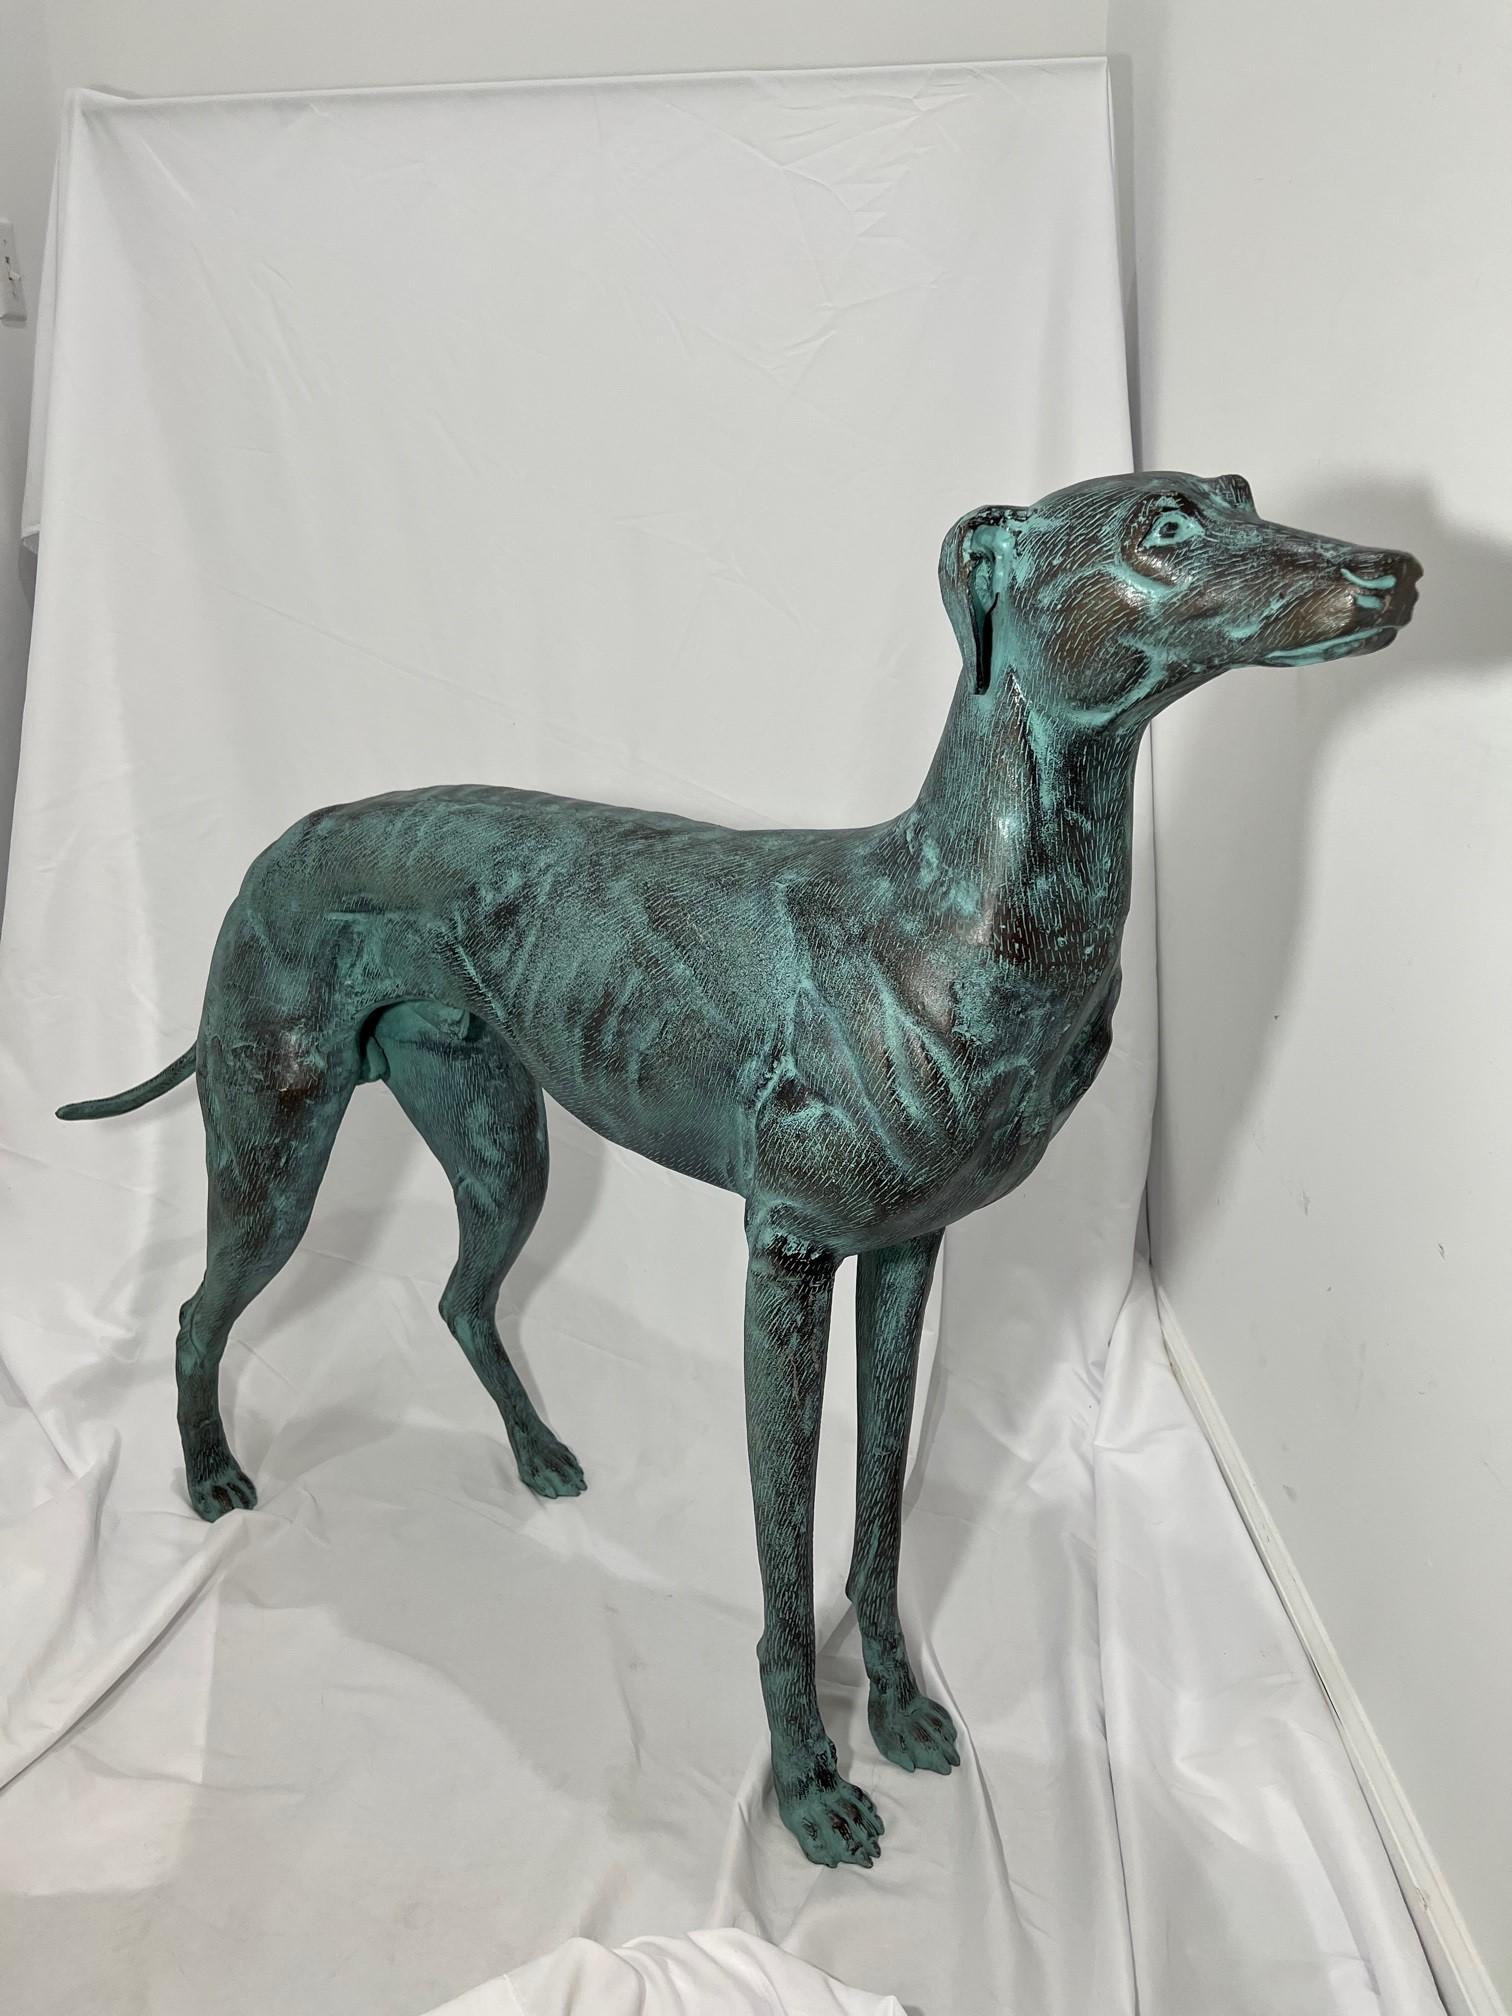 Gorgeous Paar elegante Bronze Windhund Hund Statuen Lebensgröße in sehr gutem Zustand. Sie haben eine schöne bläulich-grüne Oberfläche und würden in jedem Haus oder Garten spektakulär aussehen. Ich habe zwei identische Windhund-Statuen zur